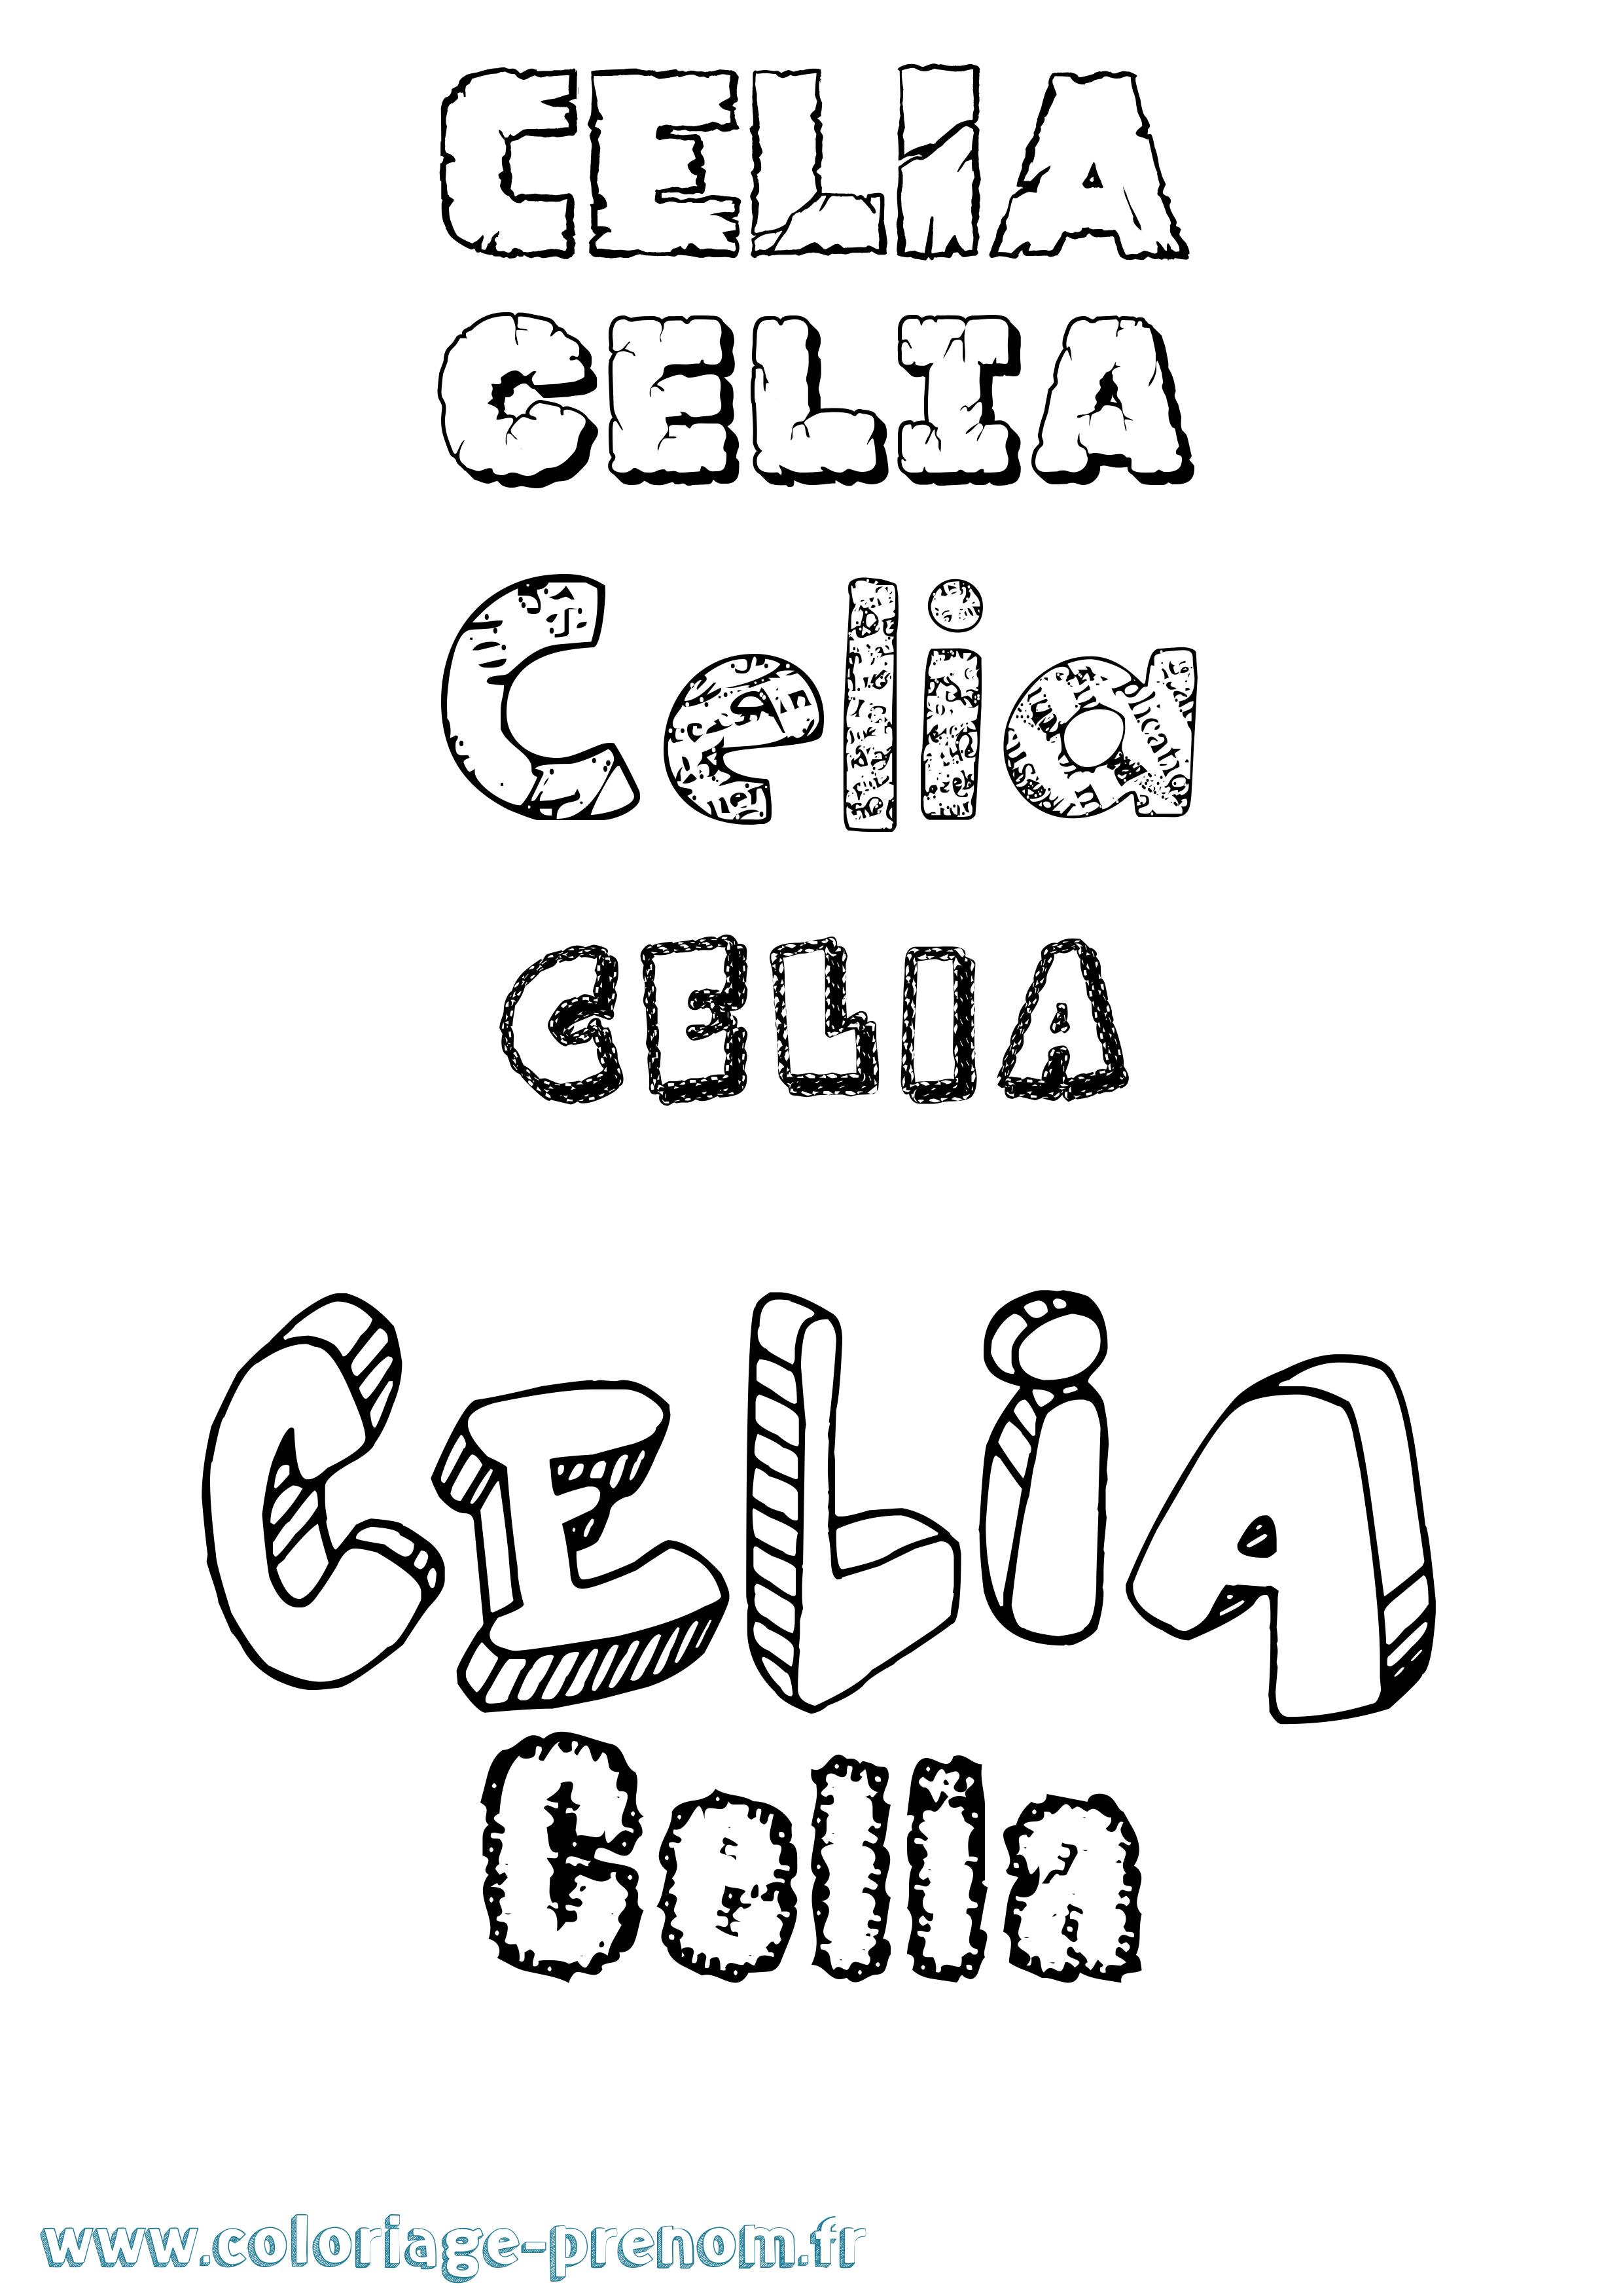 Coloriage prénom Celia